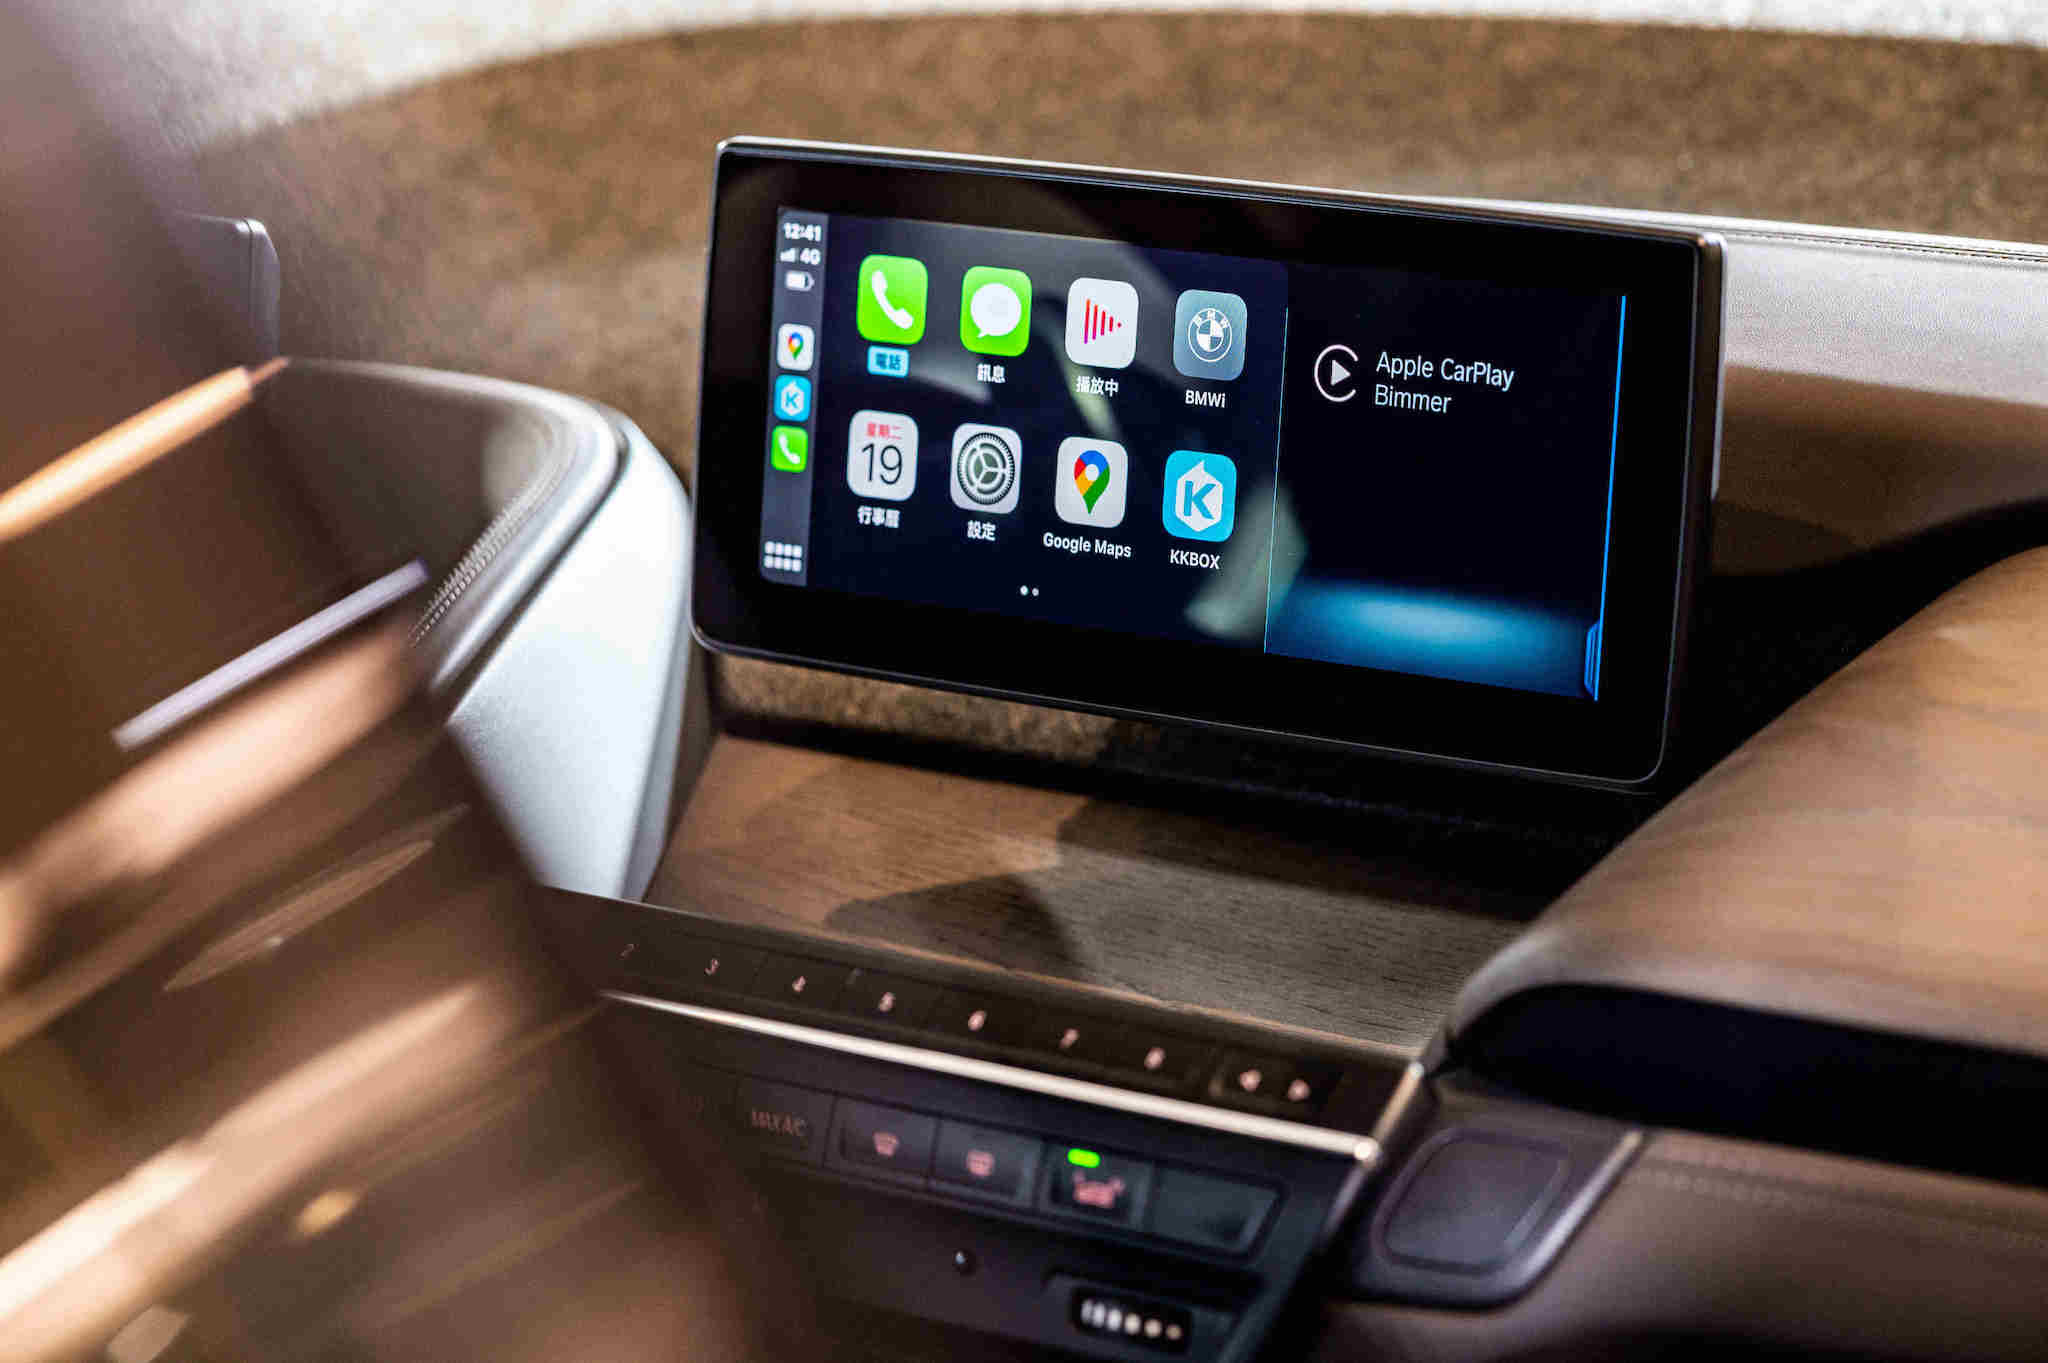 全新 BMW i3s Edition RoadStyle 特仕版標準配備的 Apple CarPlay 整合系統、智能衛星導航系統與旅程諮詢秘書等便利配備。